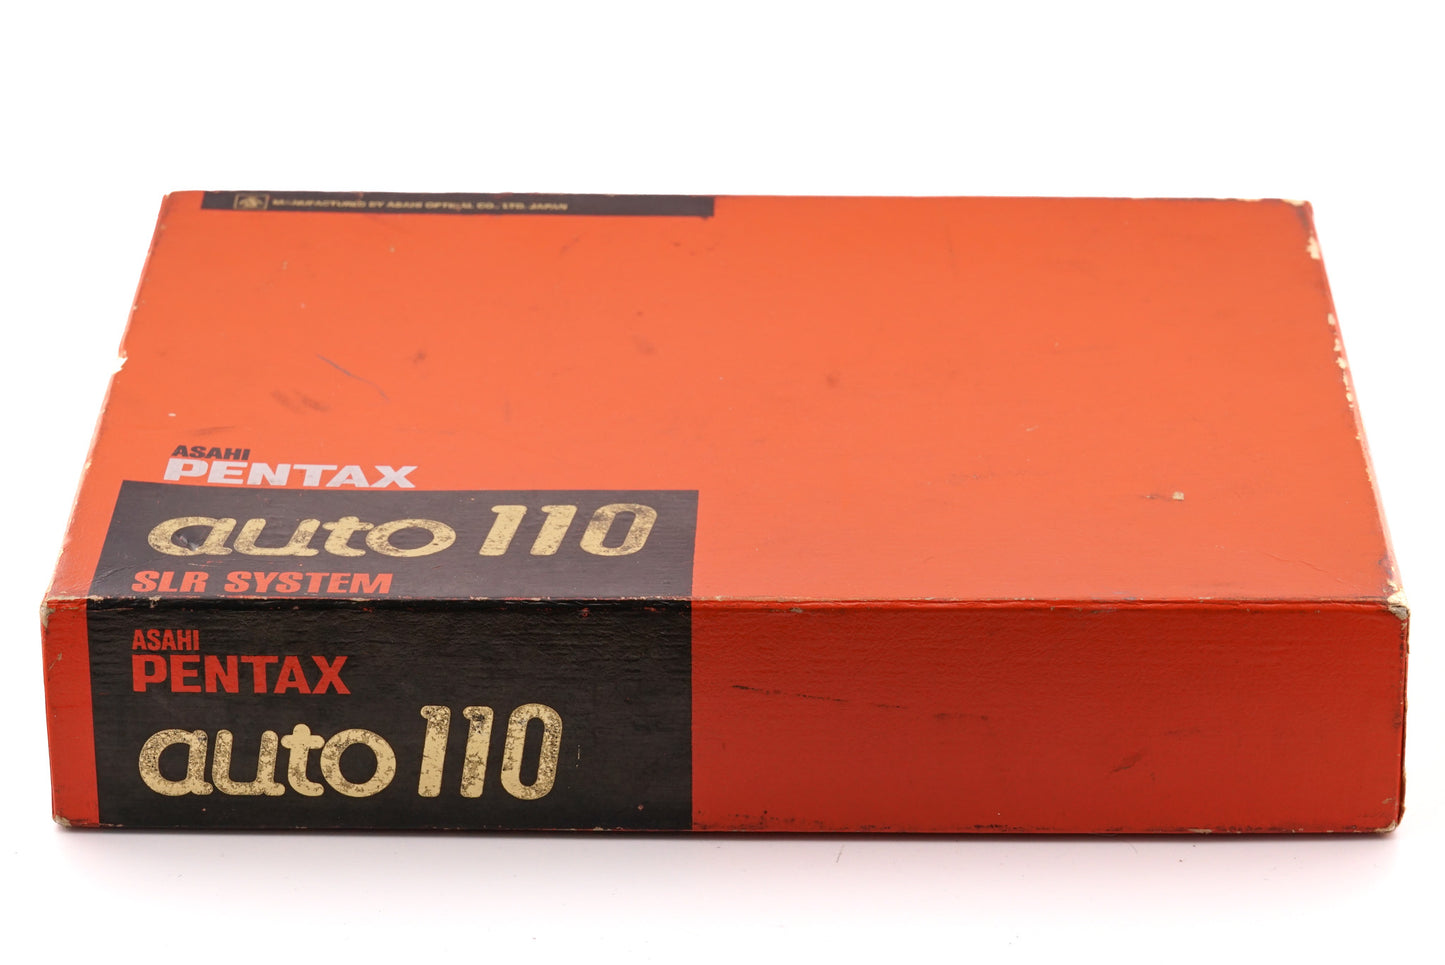 Pentax Auto 110 + 24mm f2.8 Pentax-110 + 110 Winder + AF130P + 18mm f2.8 Pentax-110 + 50mm f2.8 Pentax-110